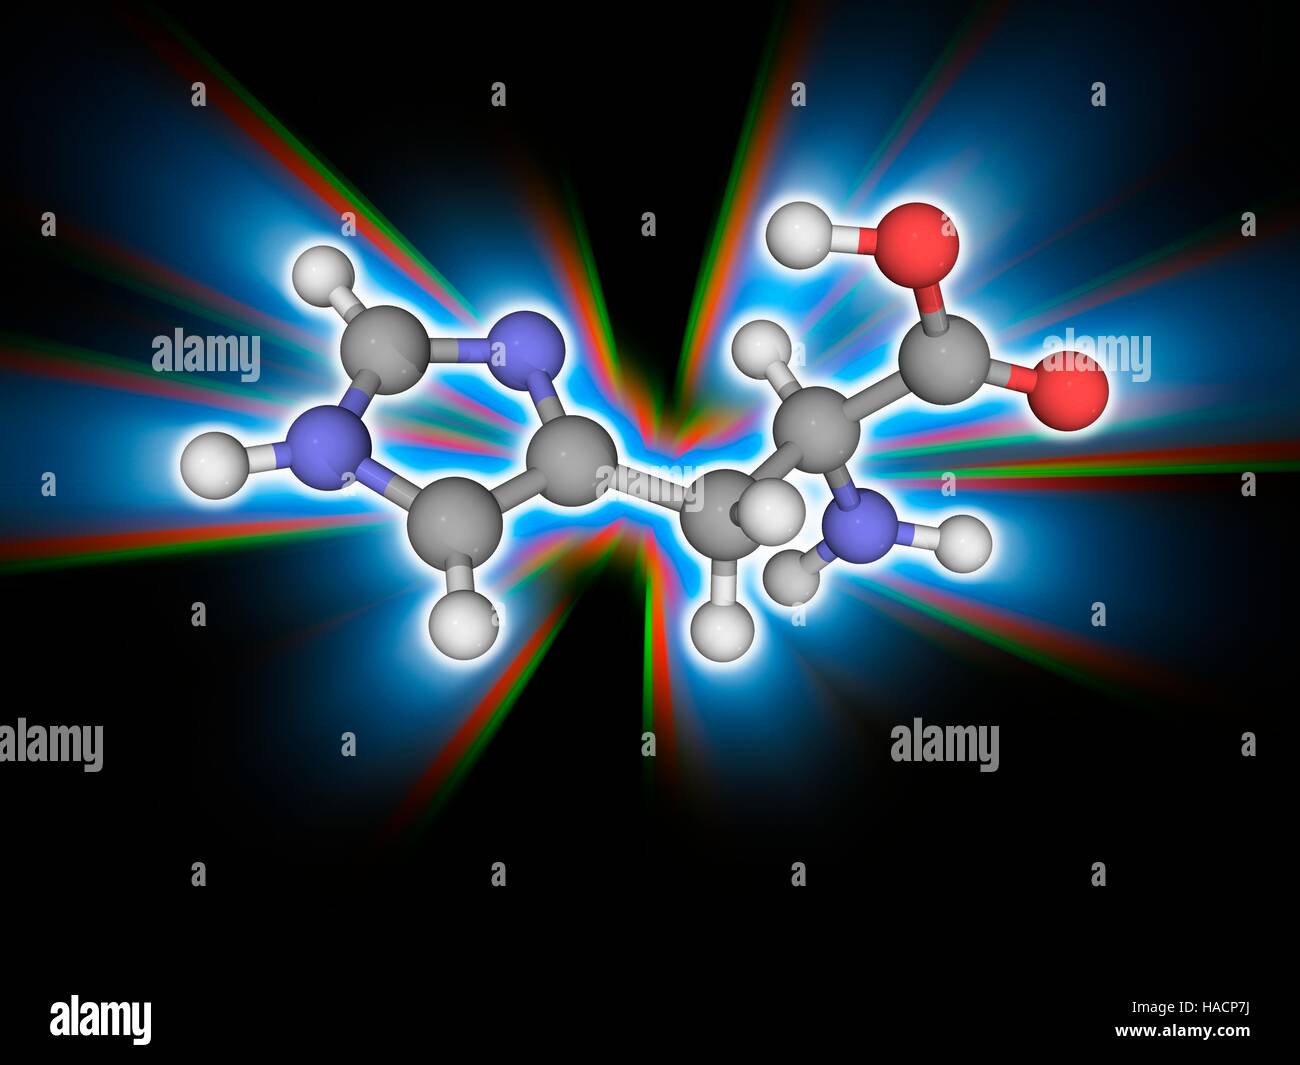 Istidina. Il modello molecolare del amminoacido essenziale istidina (C6.H9.N3.O2). Si tratta di uno degli ammino acidi che è un precursore di proteine (proteinogenic). Gli atomi sono rappresentati da sfere e sono codificati a colori: carbonio (grigio), Idrogeno (bianco), Azoto (blu) e ossigeno (rosso). Illustrazione. Foto Stock